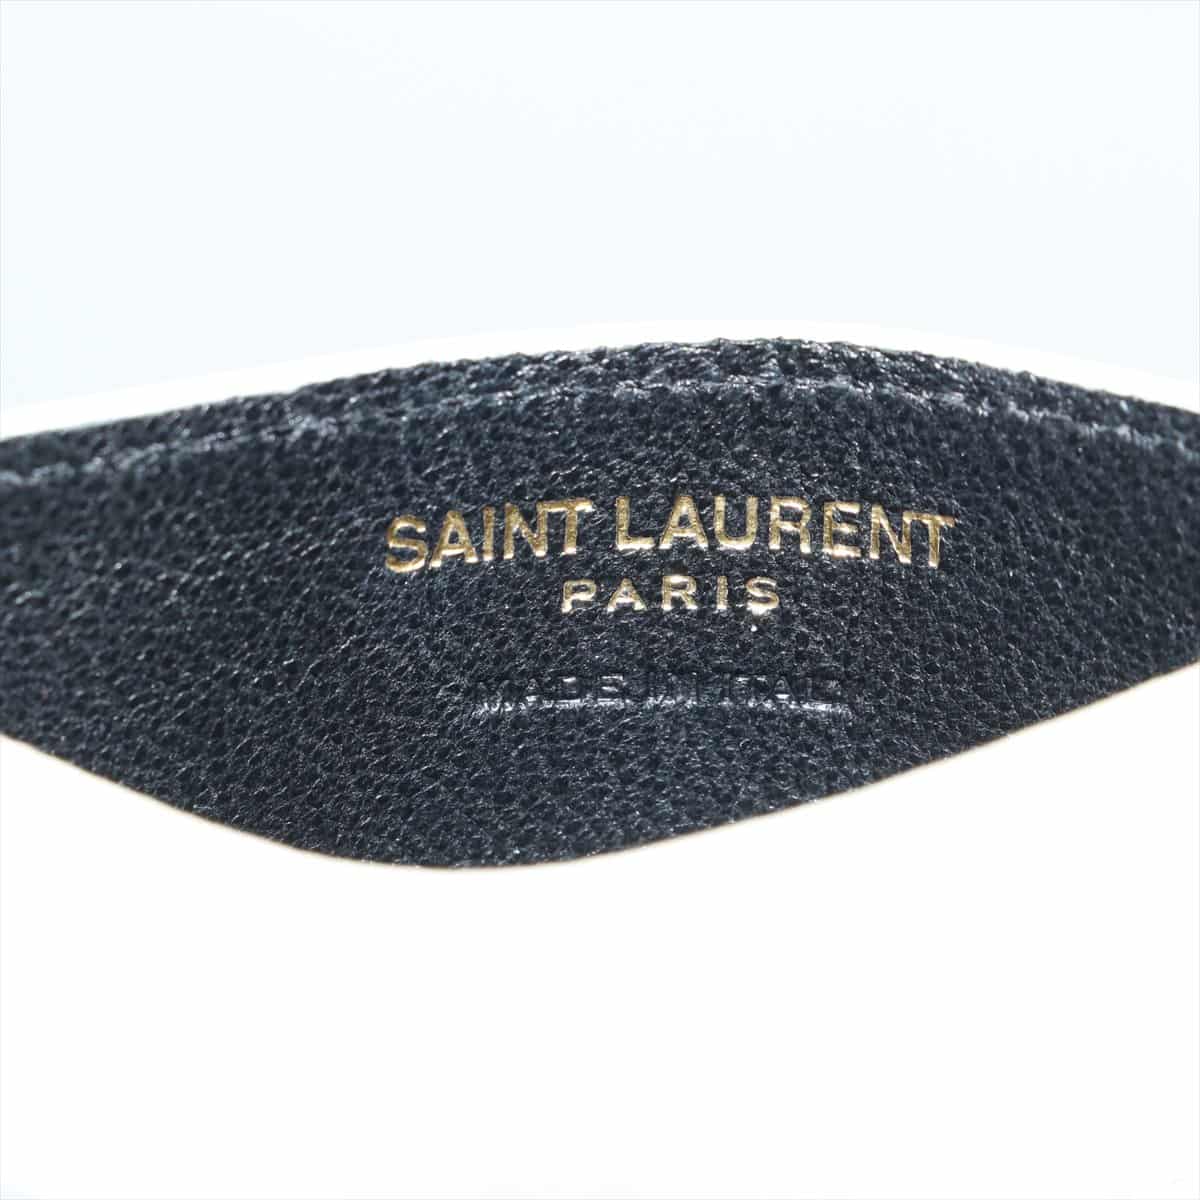 Saint Laurent Paris Logo Leather Pass case White